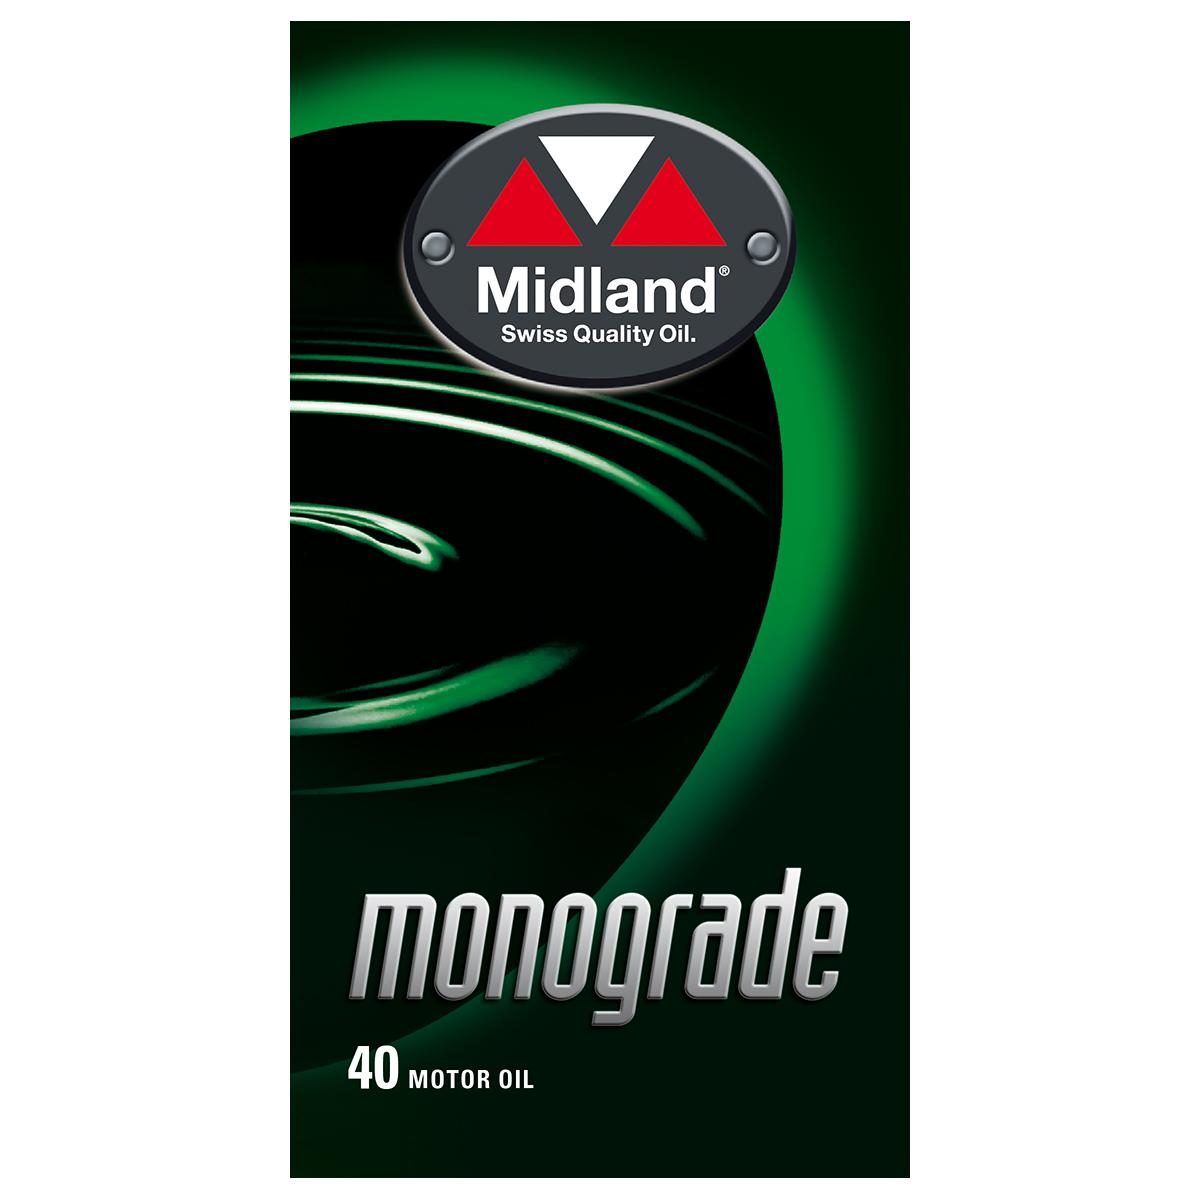 Monograde 40